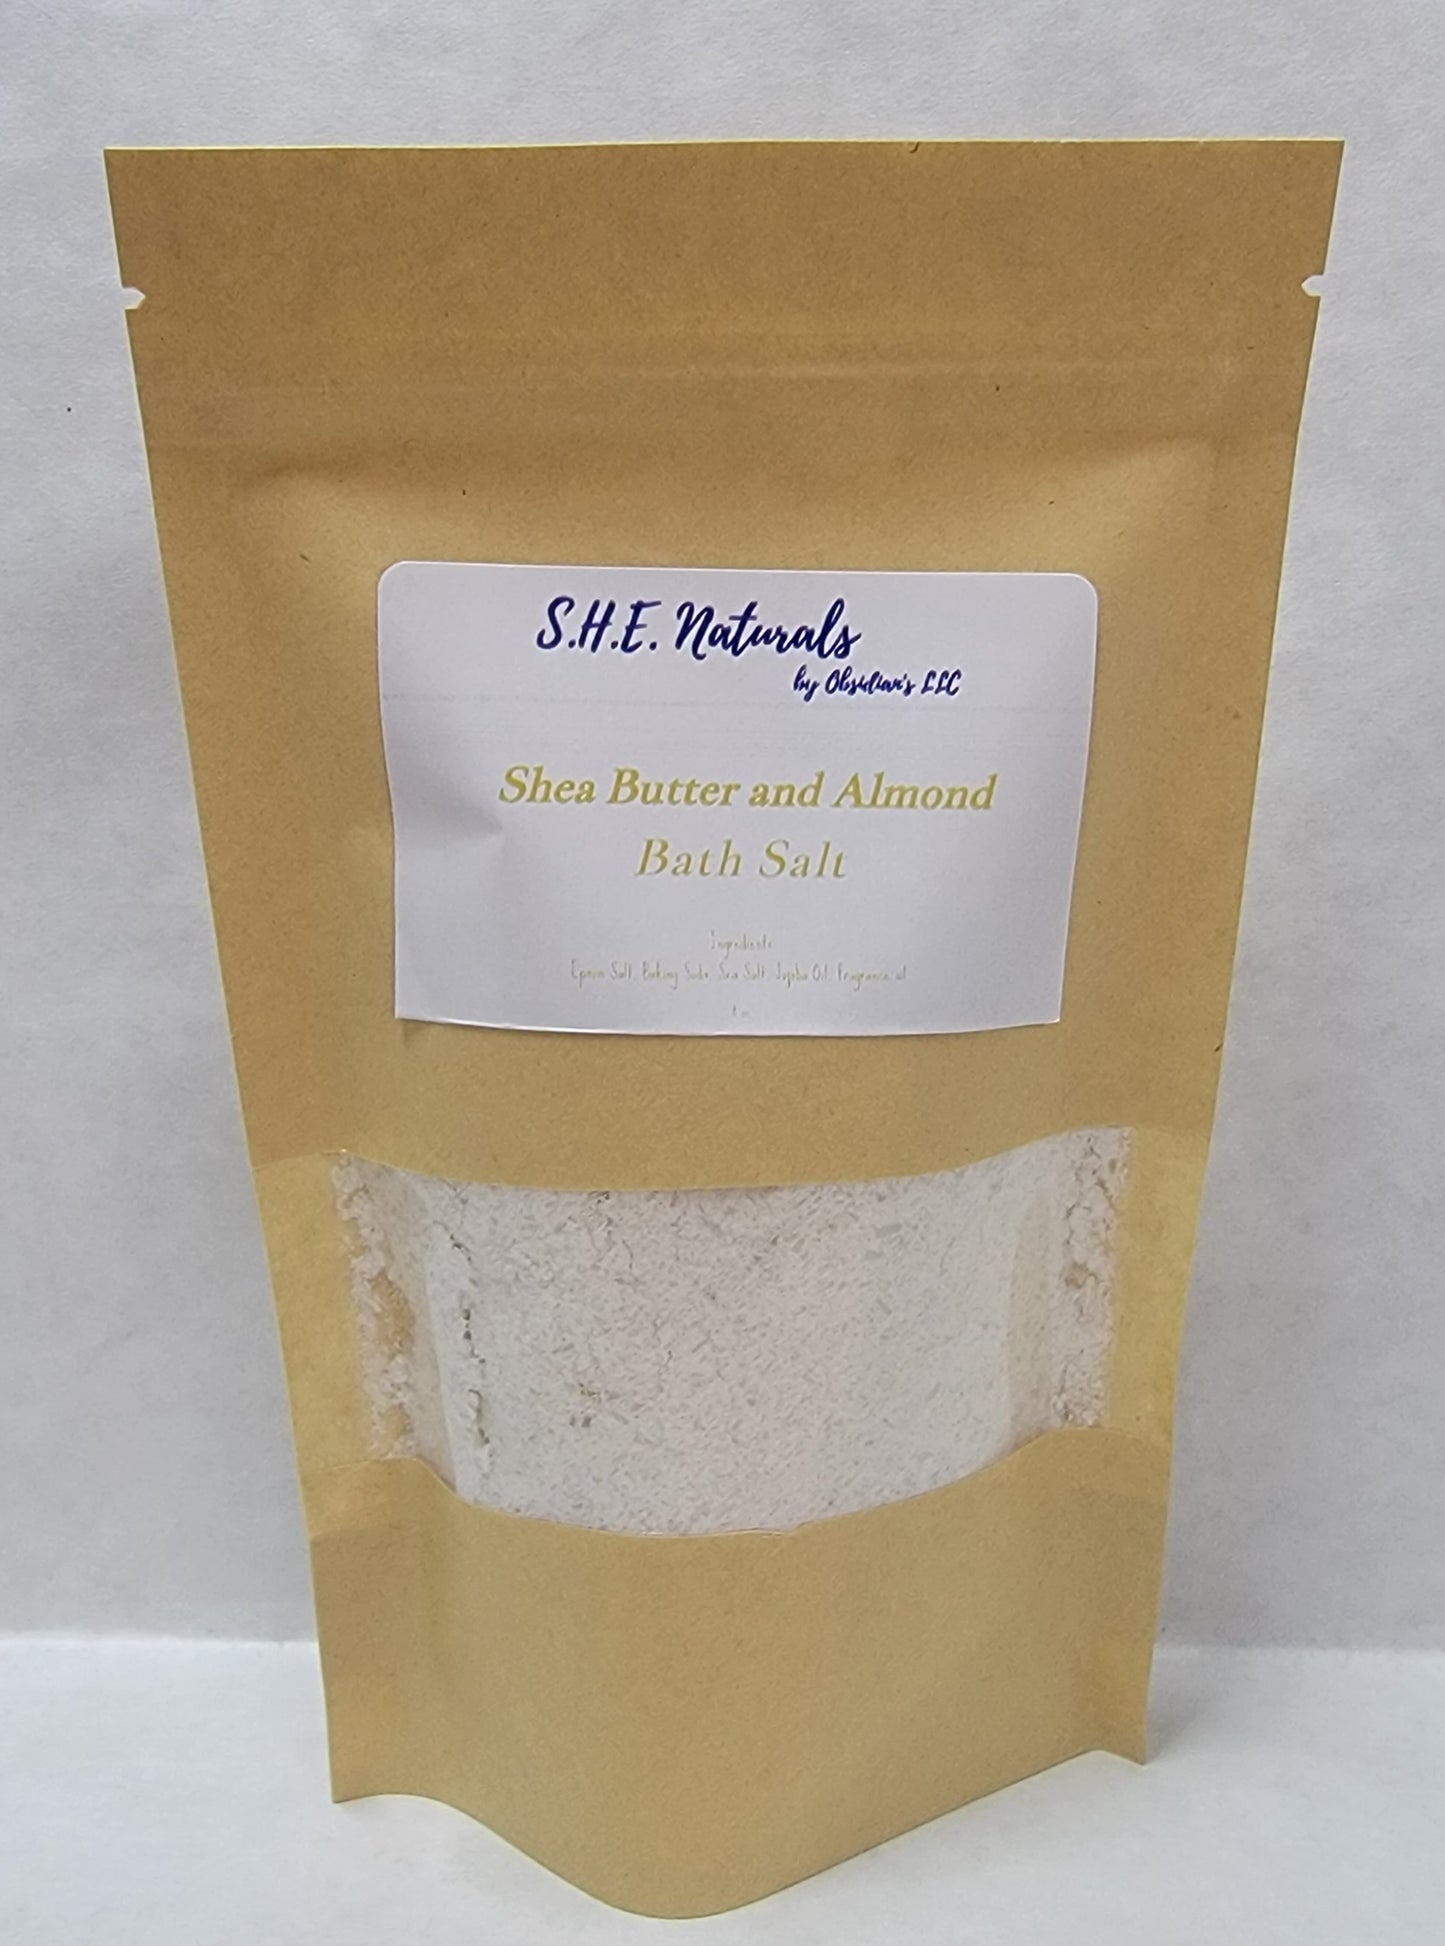 Shea Butter and Almond Bath Salt